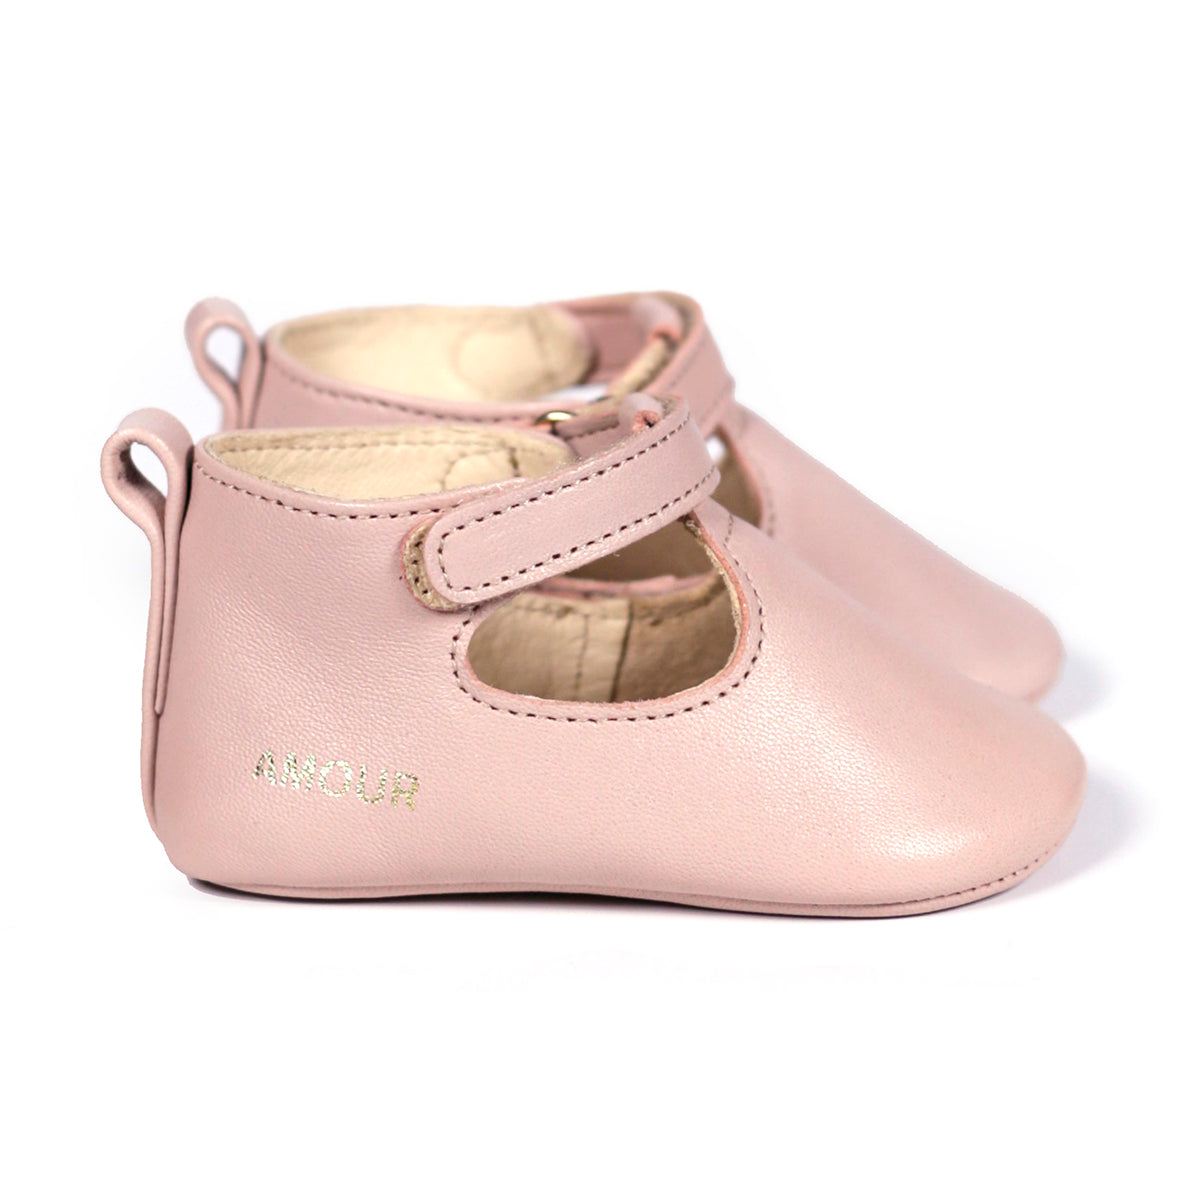 Craie Studio Craie Studio Style B Baby Shoes